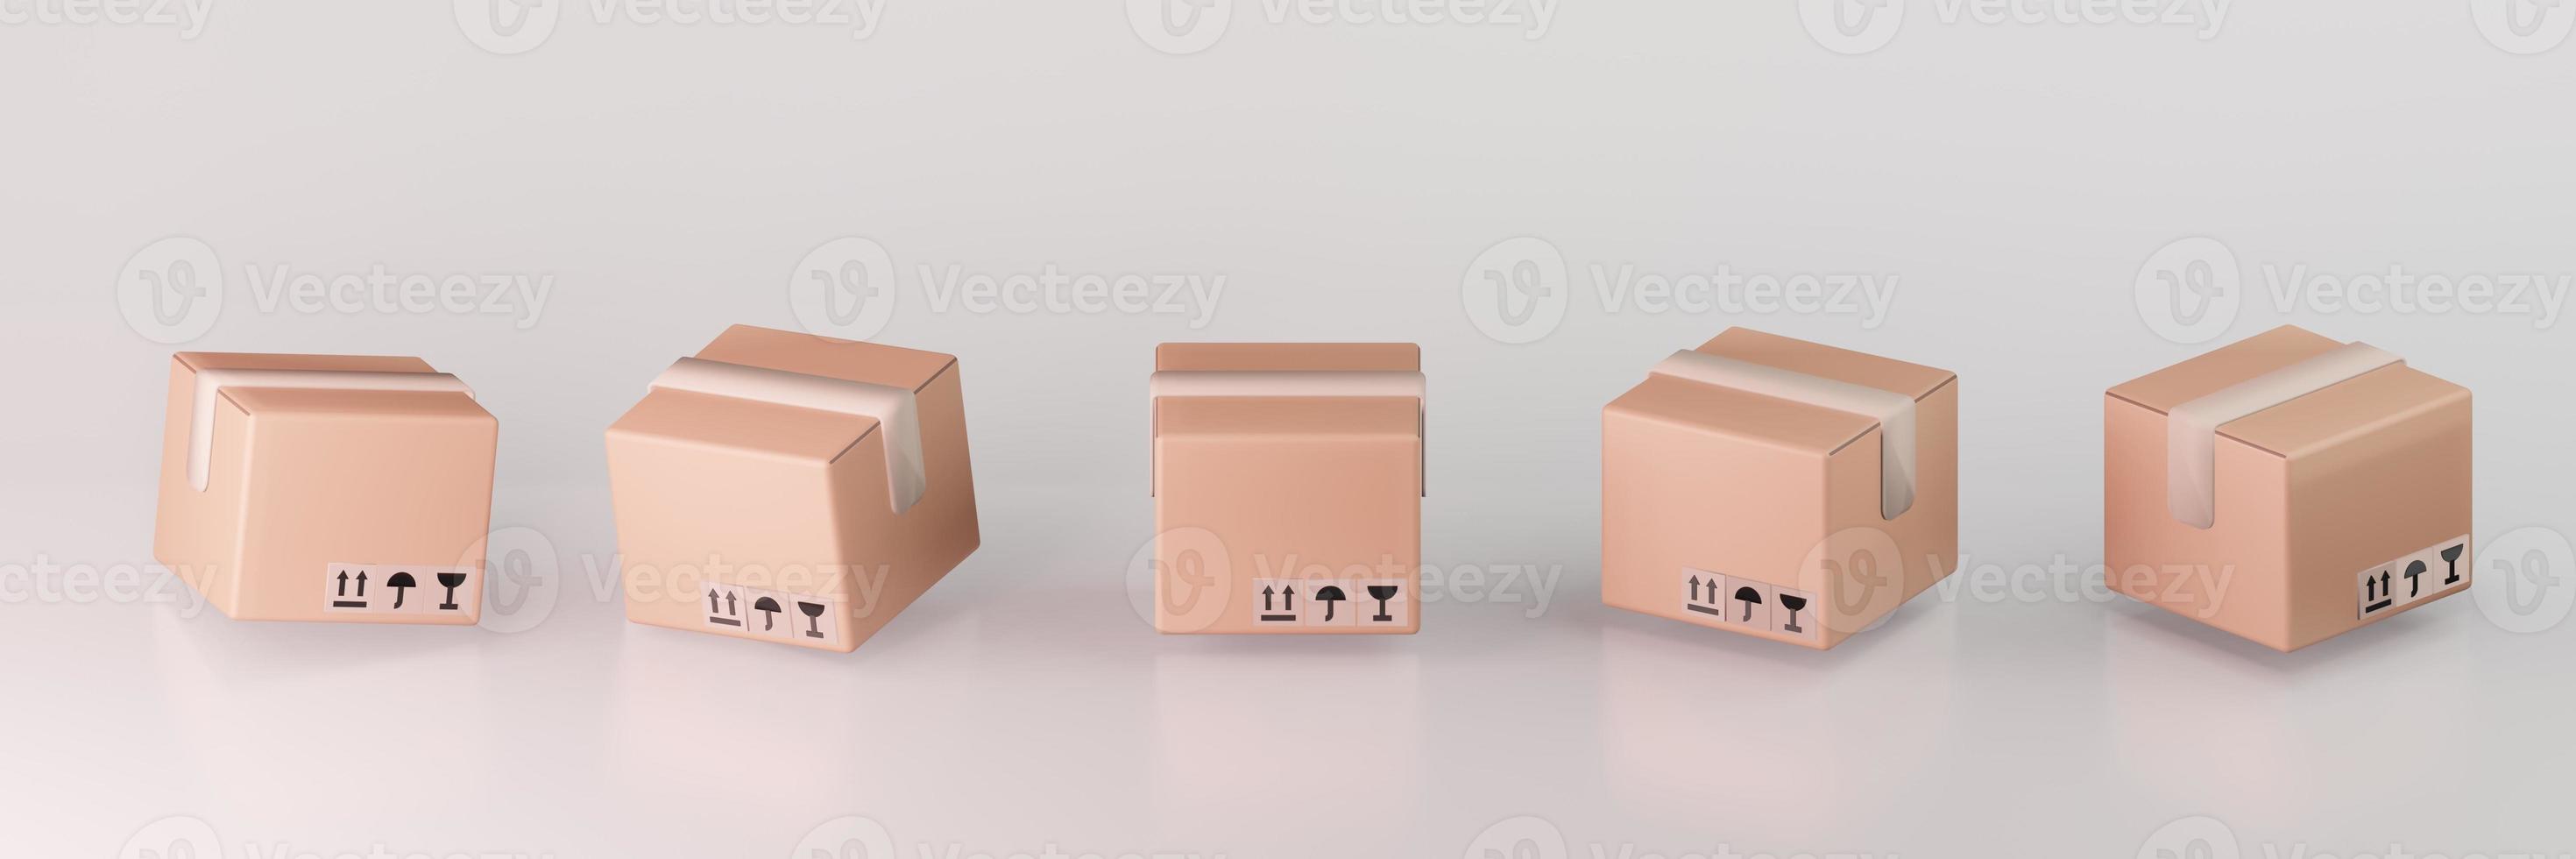 conjunto de cajas de cartón ilustración 3d embalaje de entrega y transporte almacenamiento de logística de envío sobre fondo gris foto